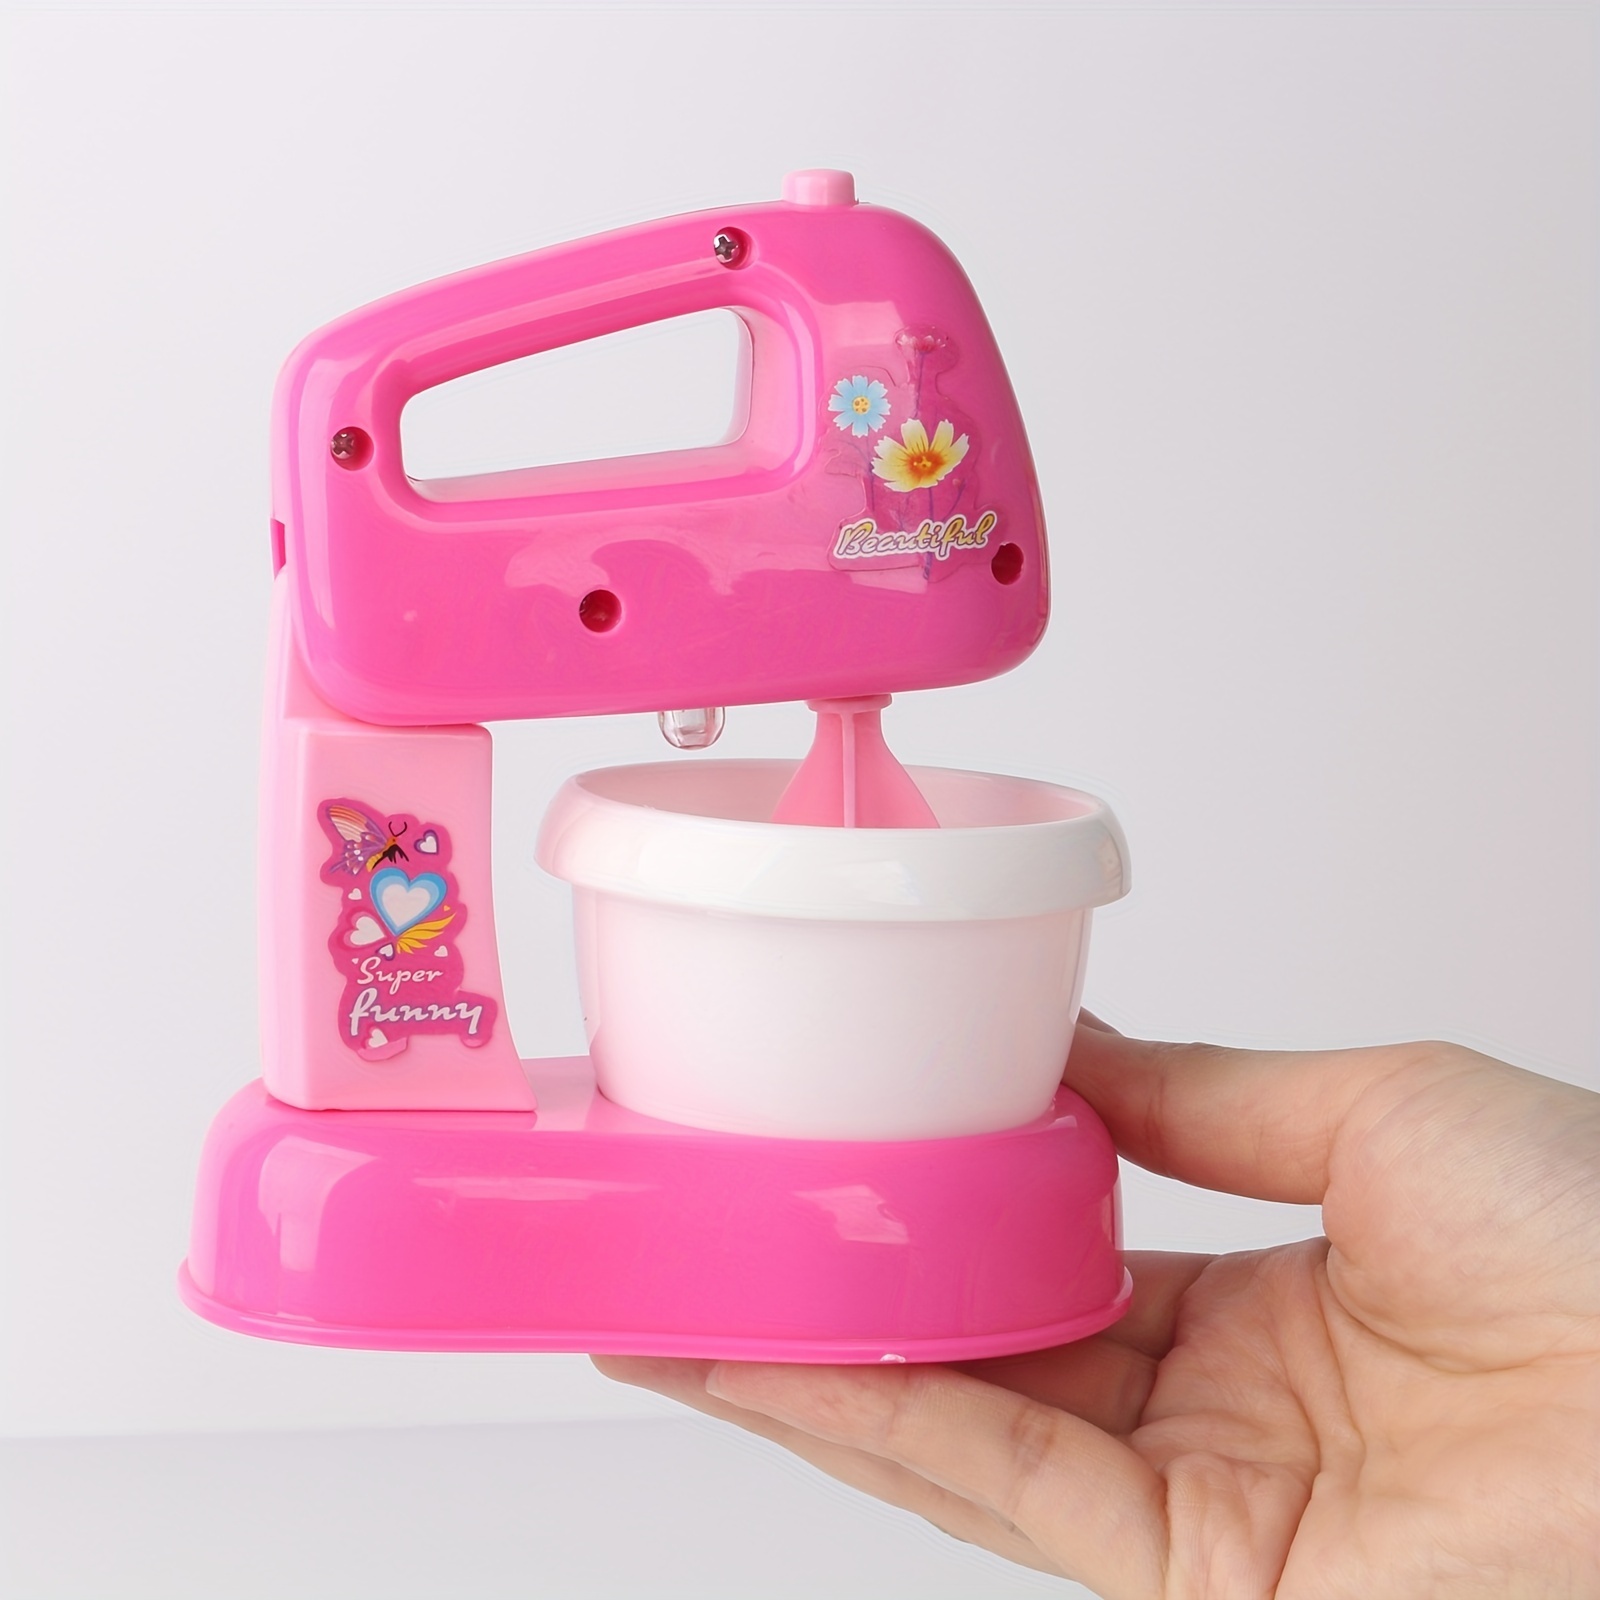 GIRL FUN TOYS Mini Kitchen Set with Blender, Mixer